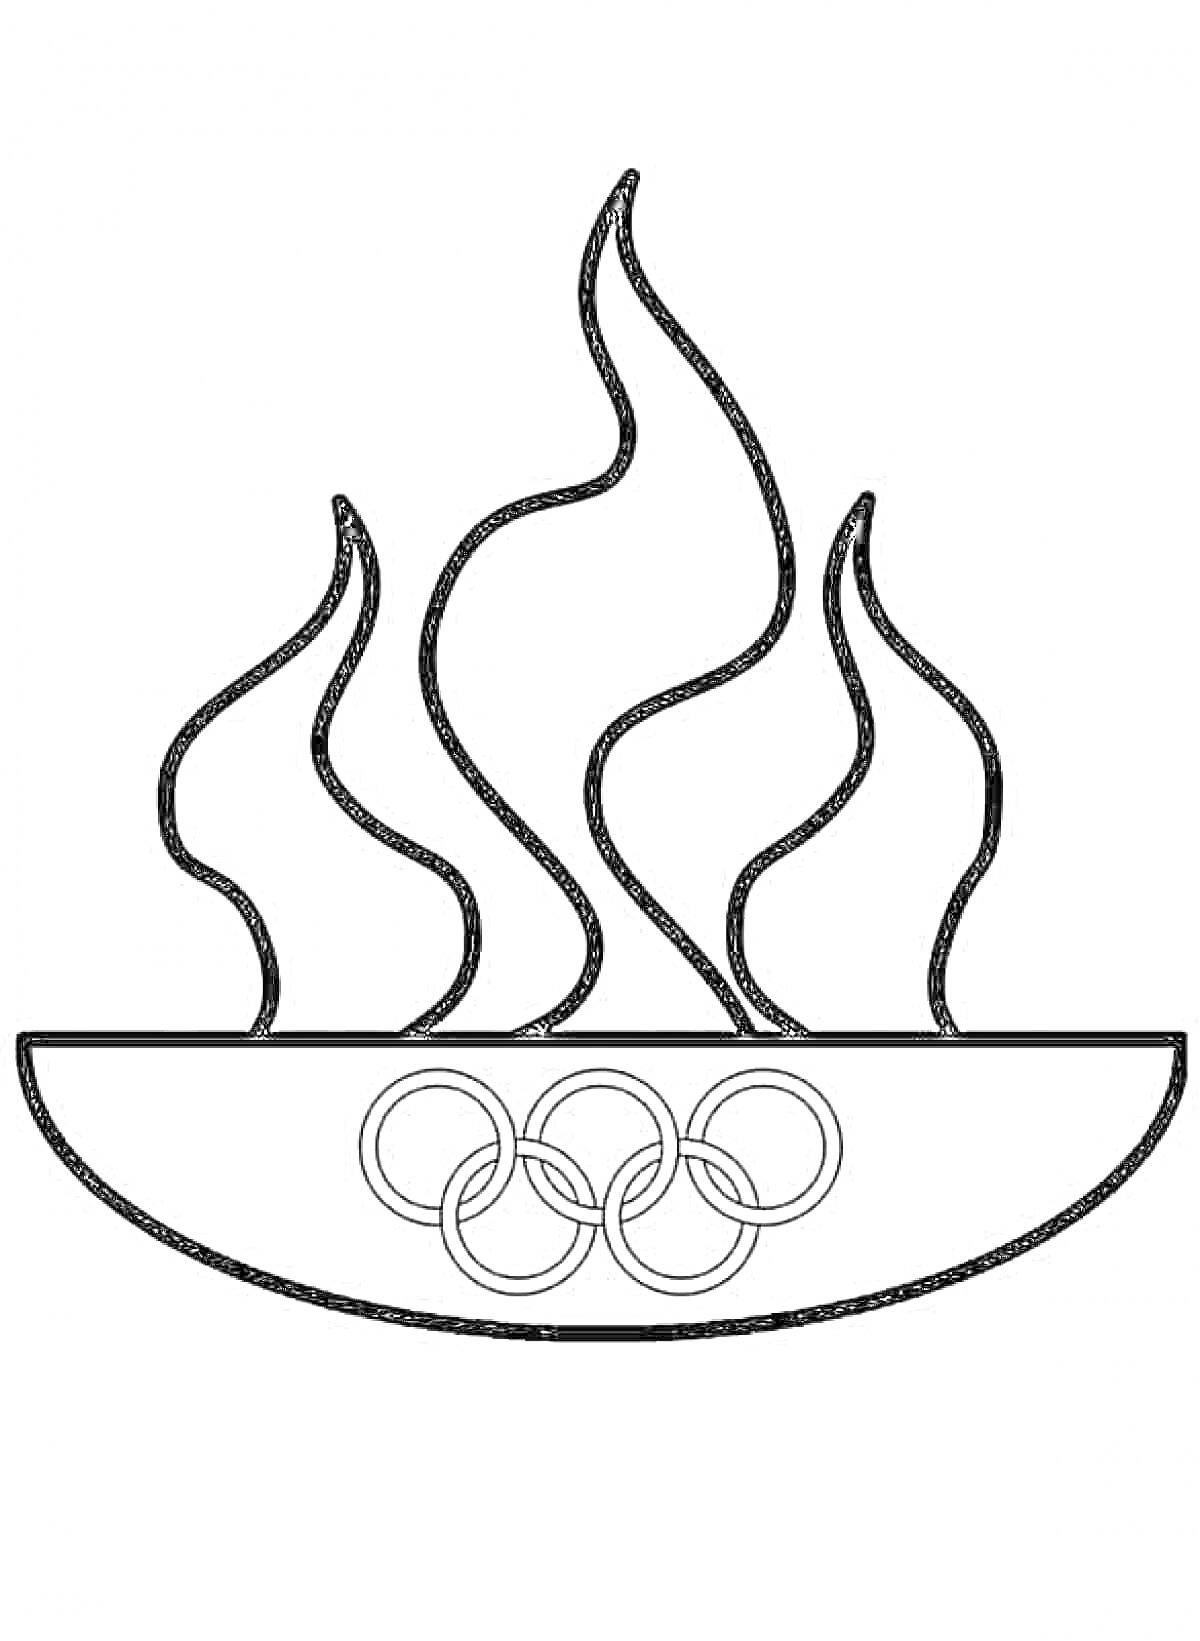 Раскраска Олимпийское пламя в чаше с олимпийскими кольцами